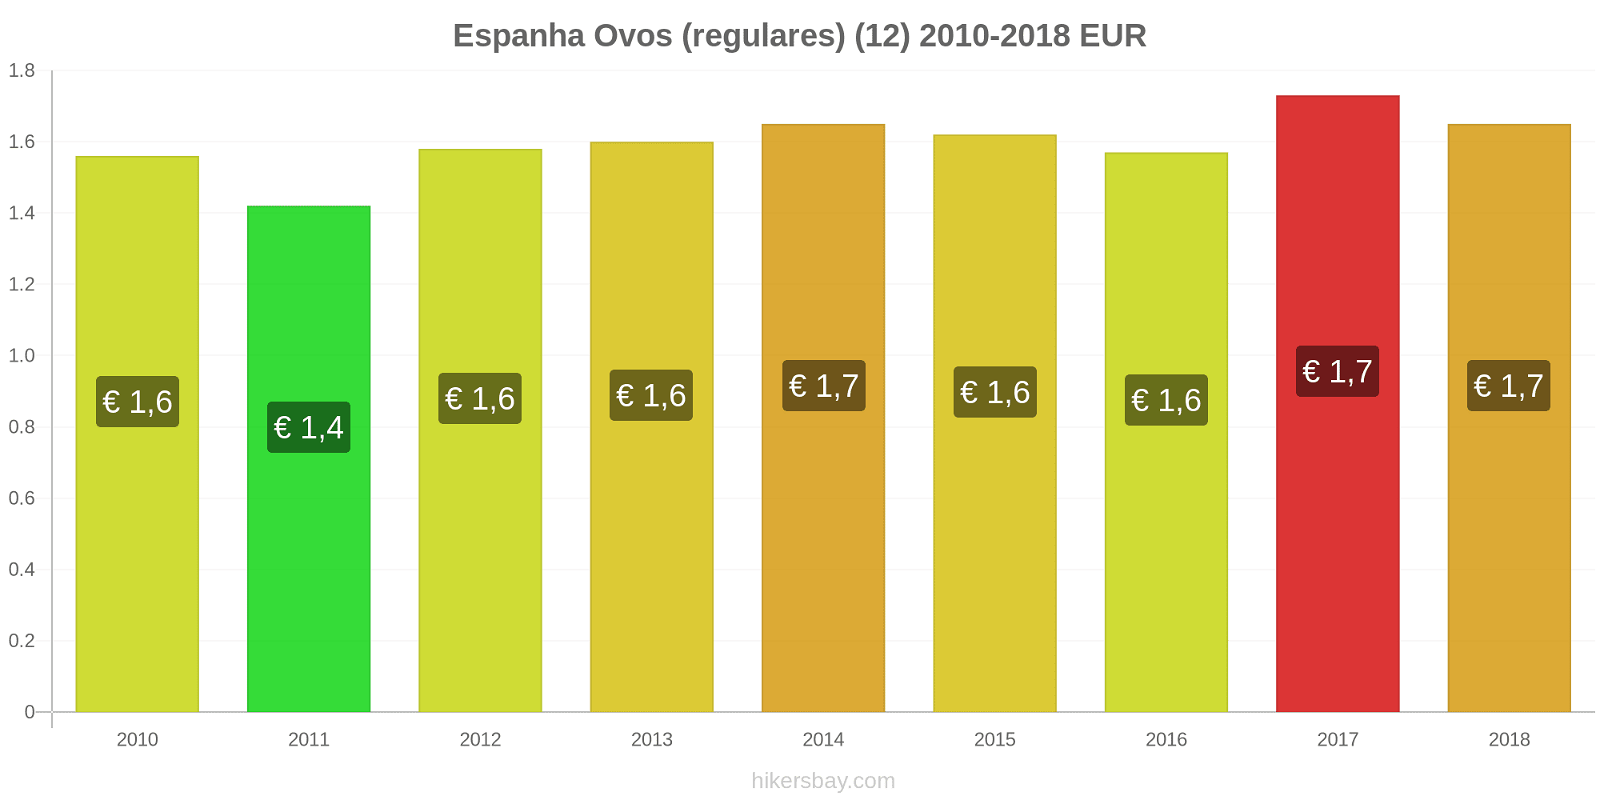 Espanha mudanças de preços Ovos (normais) (12 unidades) hikersbay.com